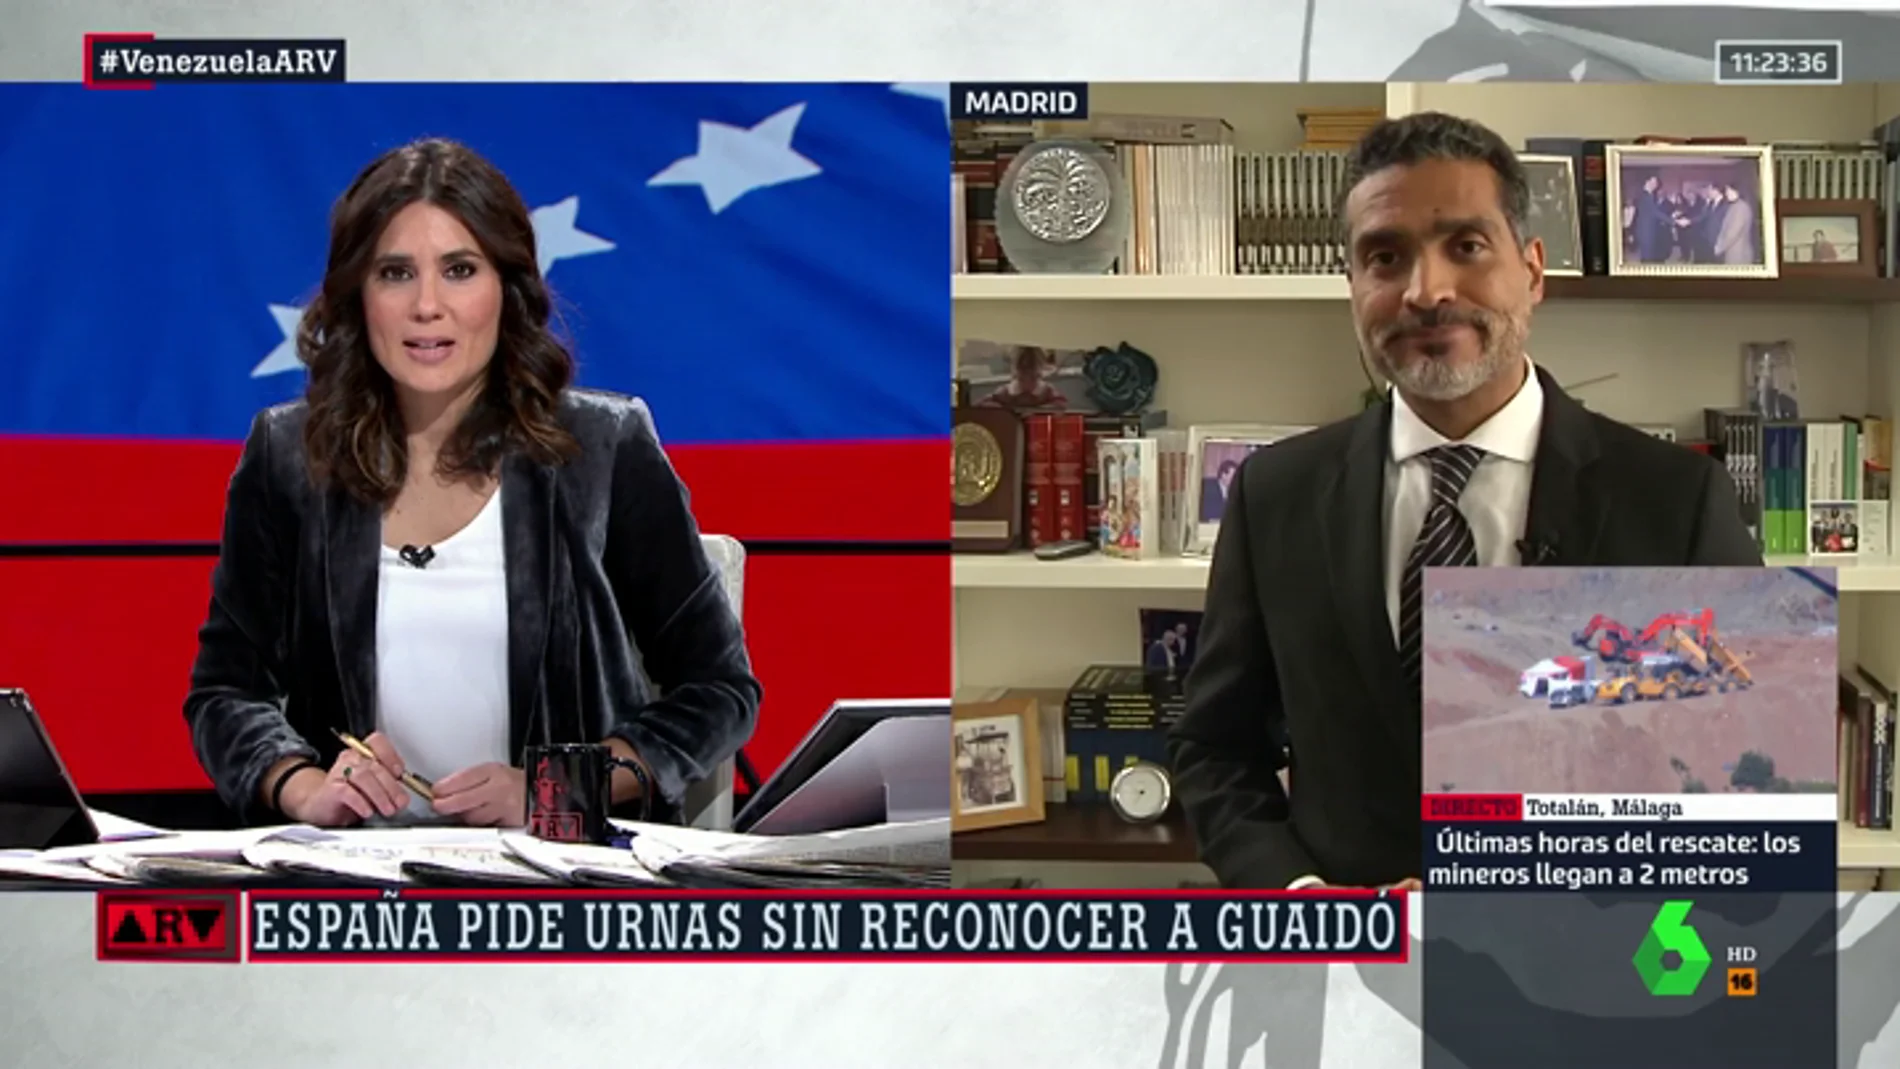 Juan Carlos Rodríguez, abogado internacional: "Venezuela exige cambios, y Guaidó es el camino que se debe tomar"